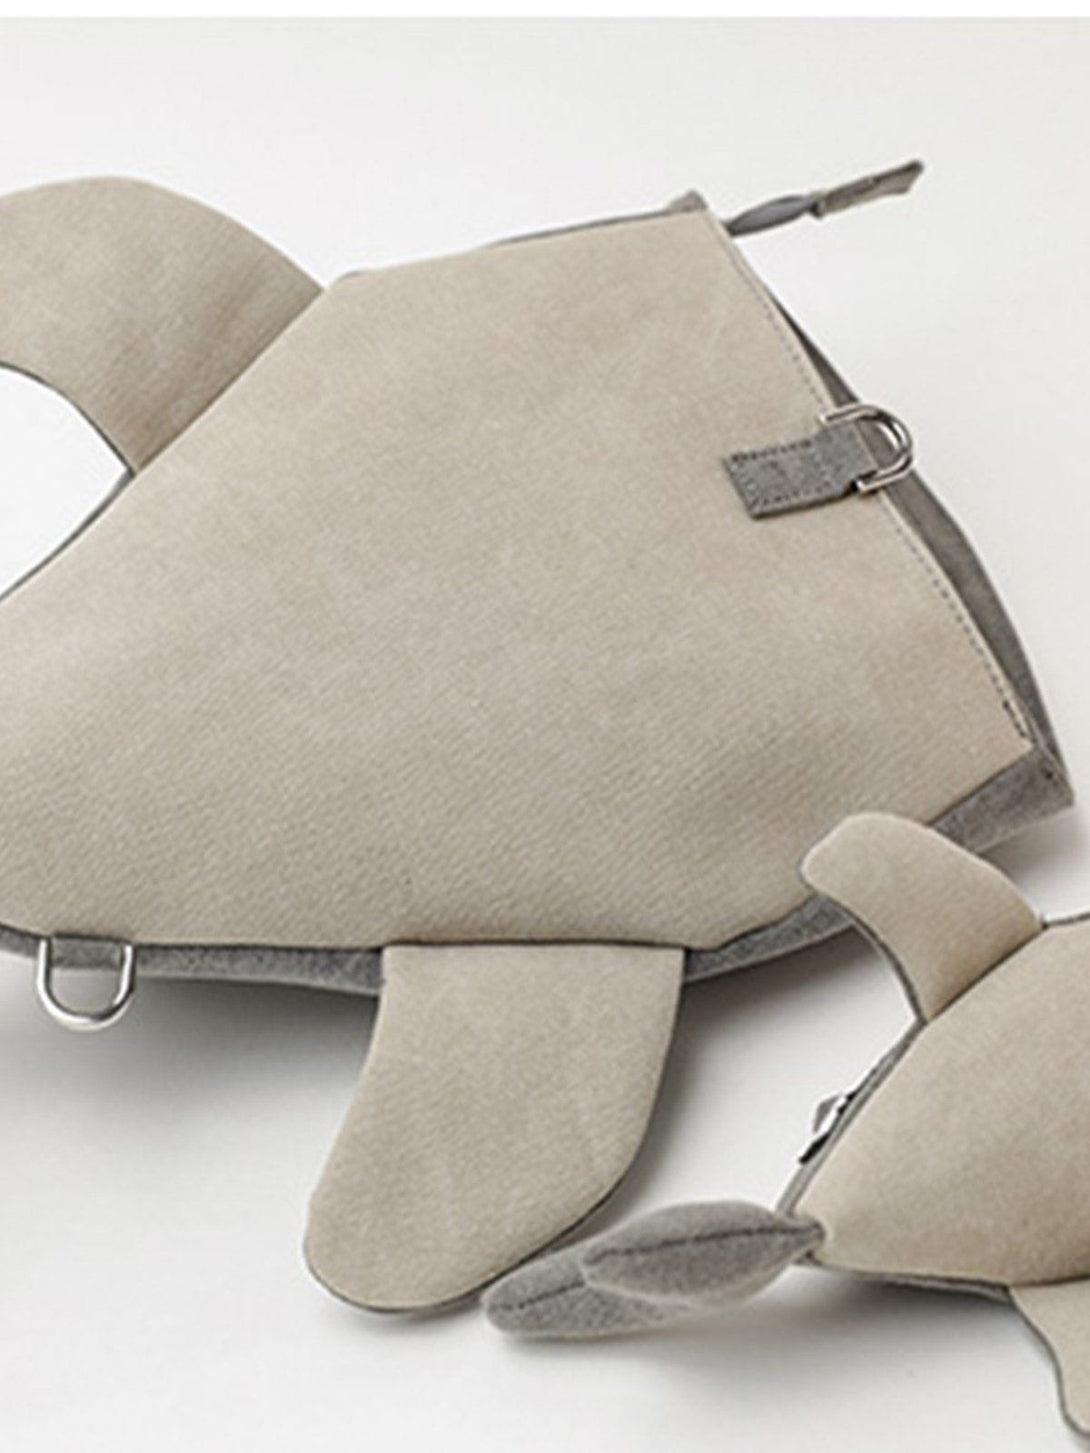 Majesda® - Shark Shape Crossbody Bag- Outfit Ideas - Streetwear Fashion - majesda.com